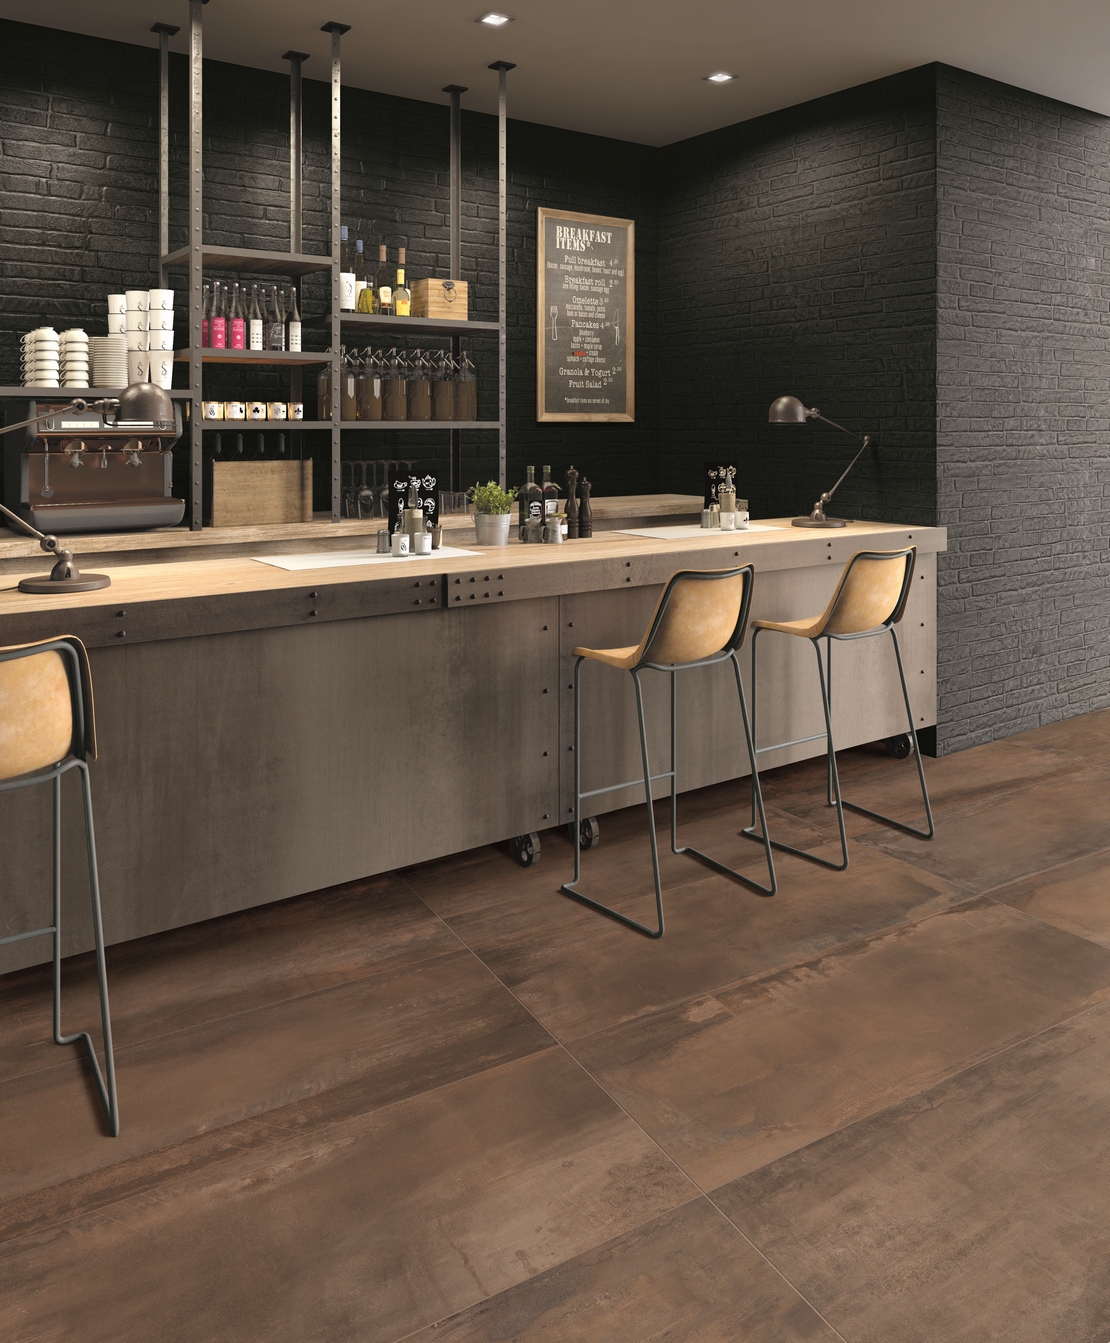 Modernes Cafe-Restaurant mit braunem Feinsteinzeugboden in Metalloptik für einen industriellen Touch - Inspirationen Iperceramica